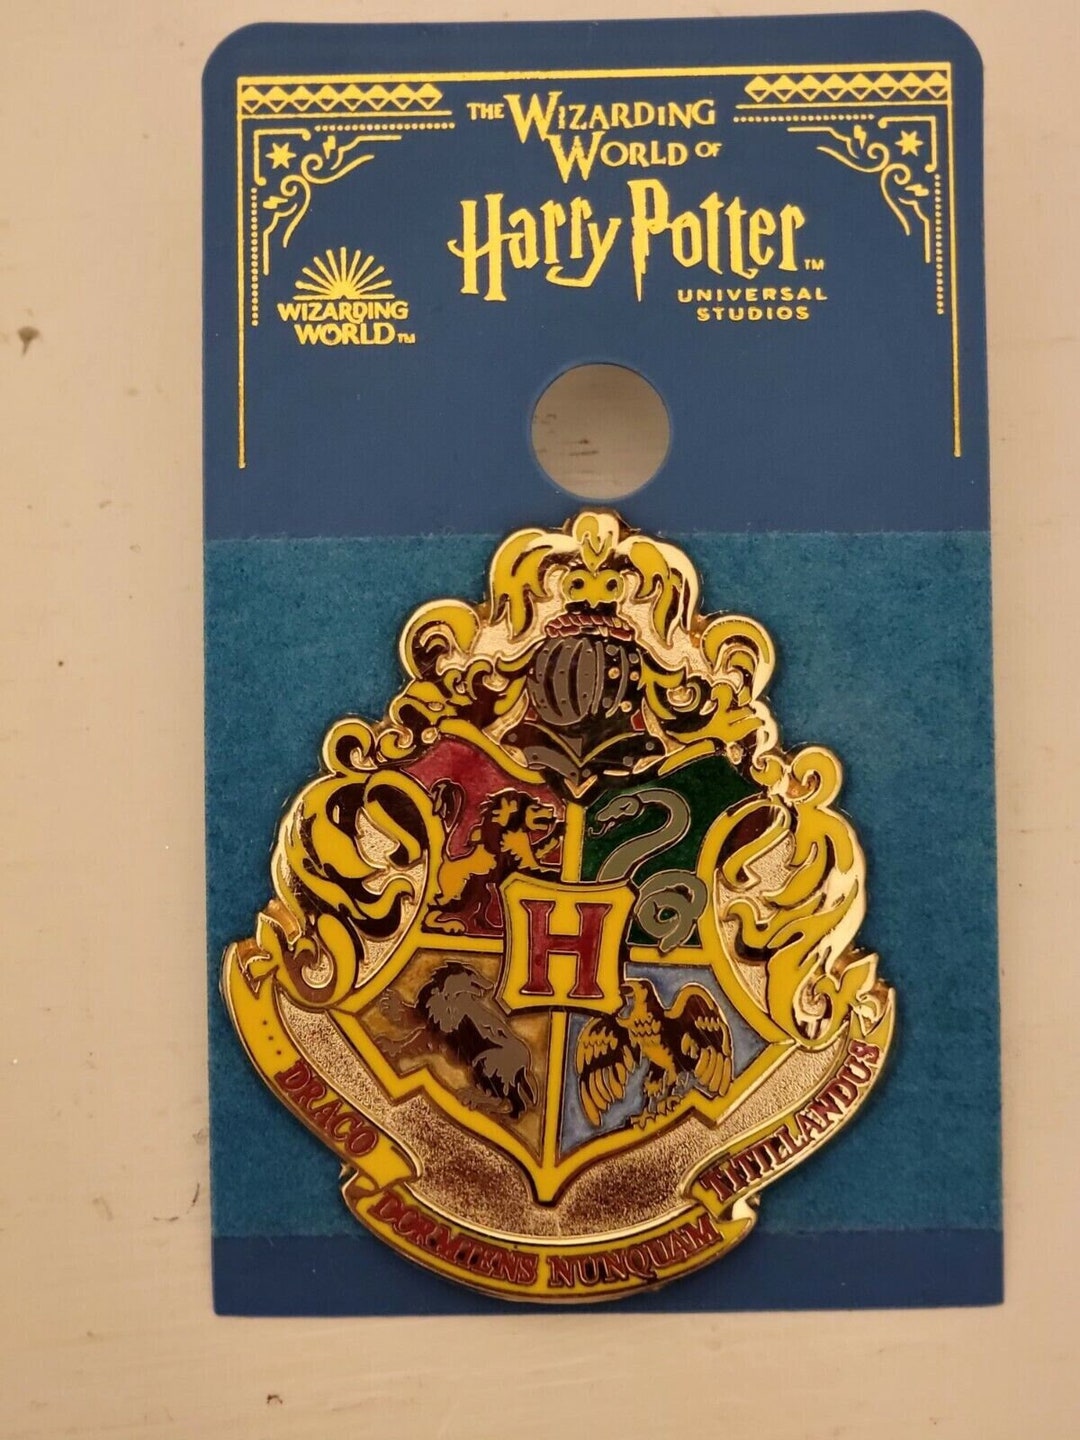 File:Hogwarts School, The Making of Harry Potter, Warner Bros